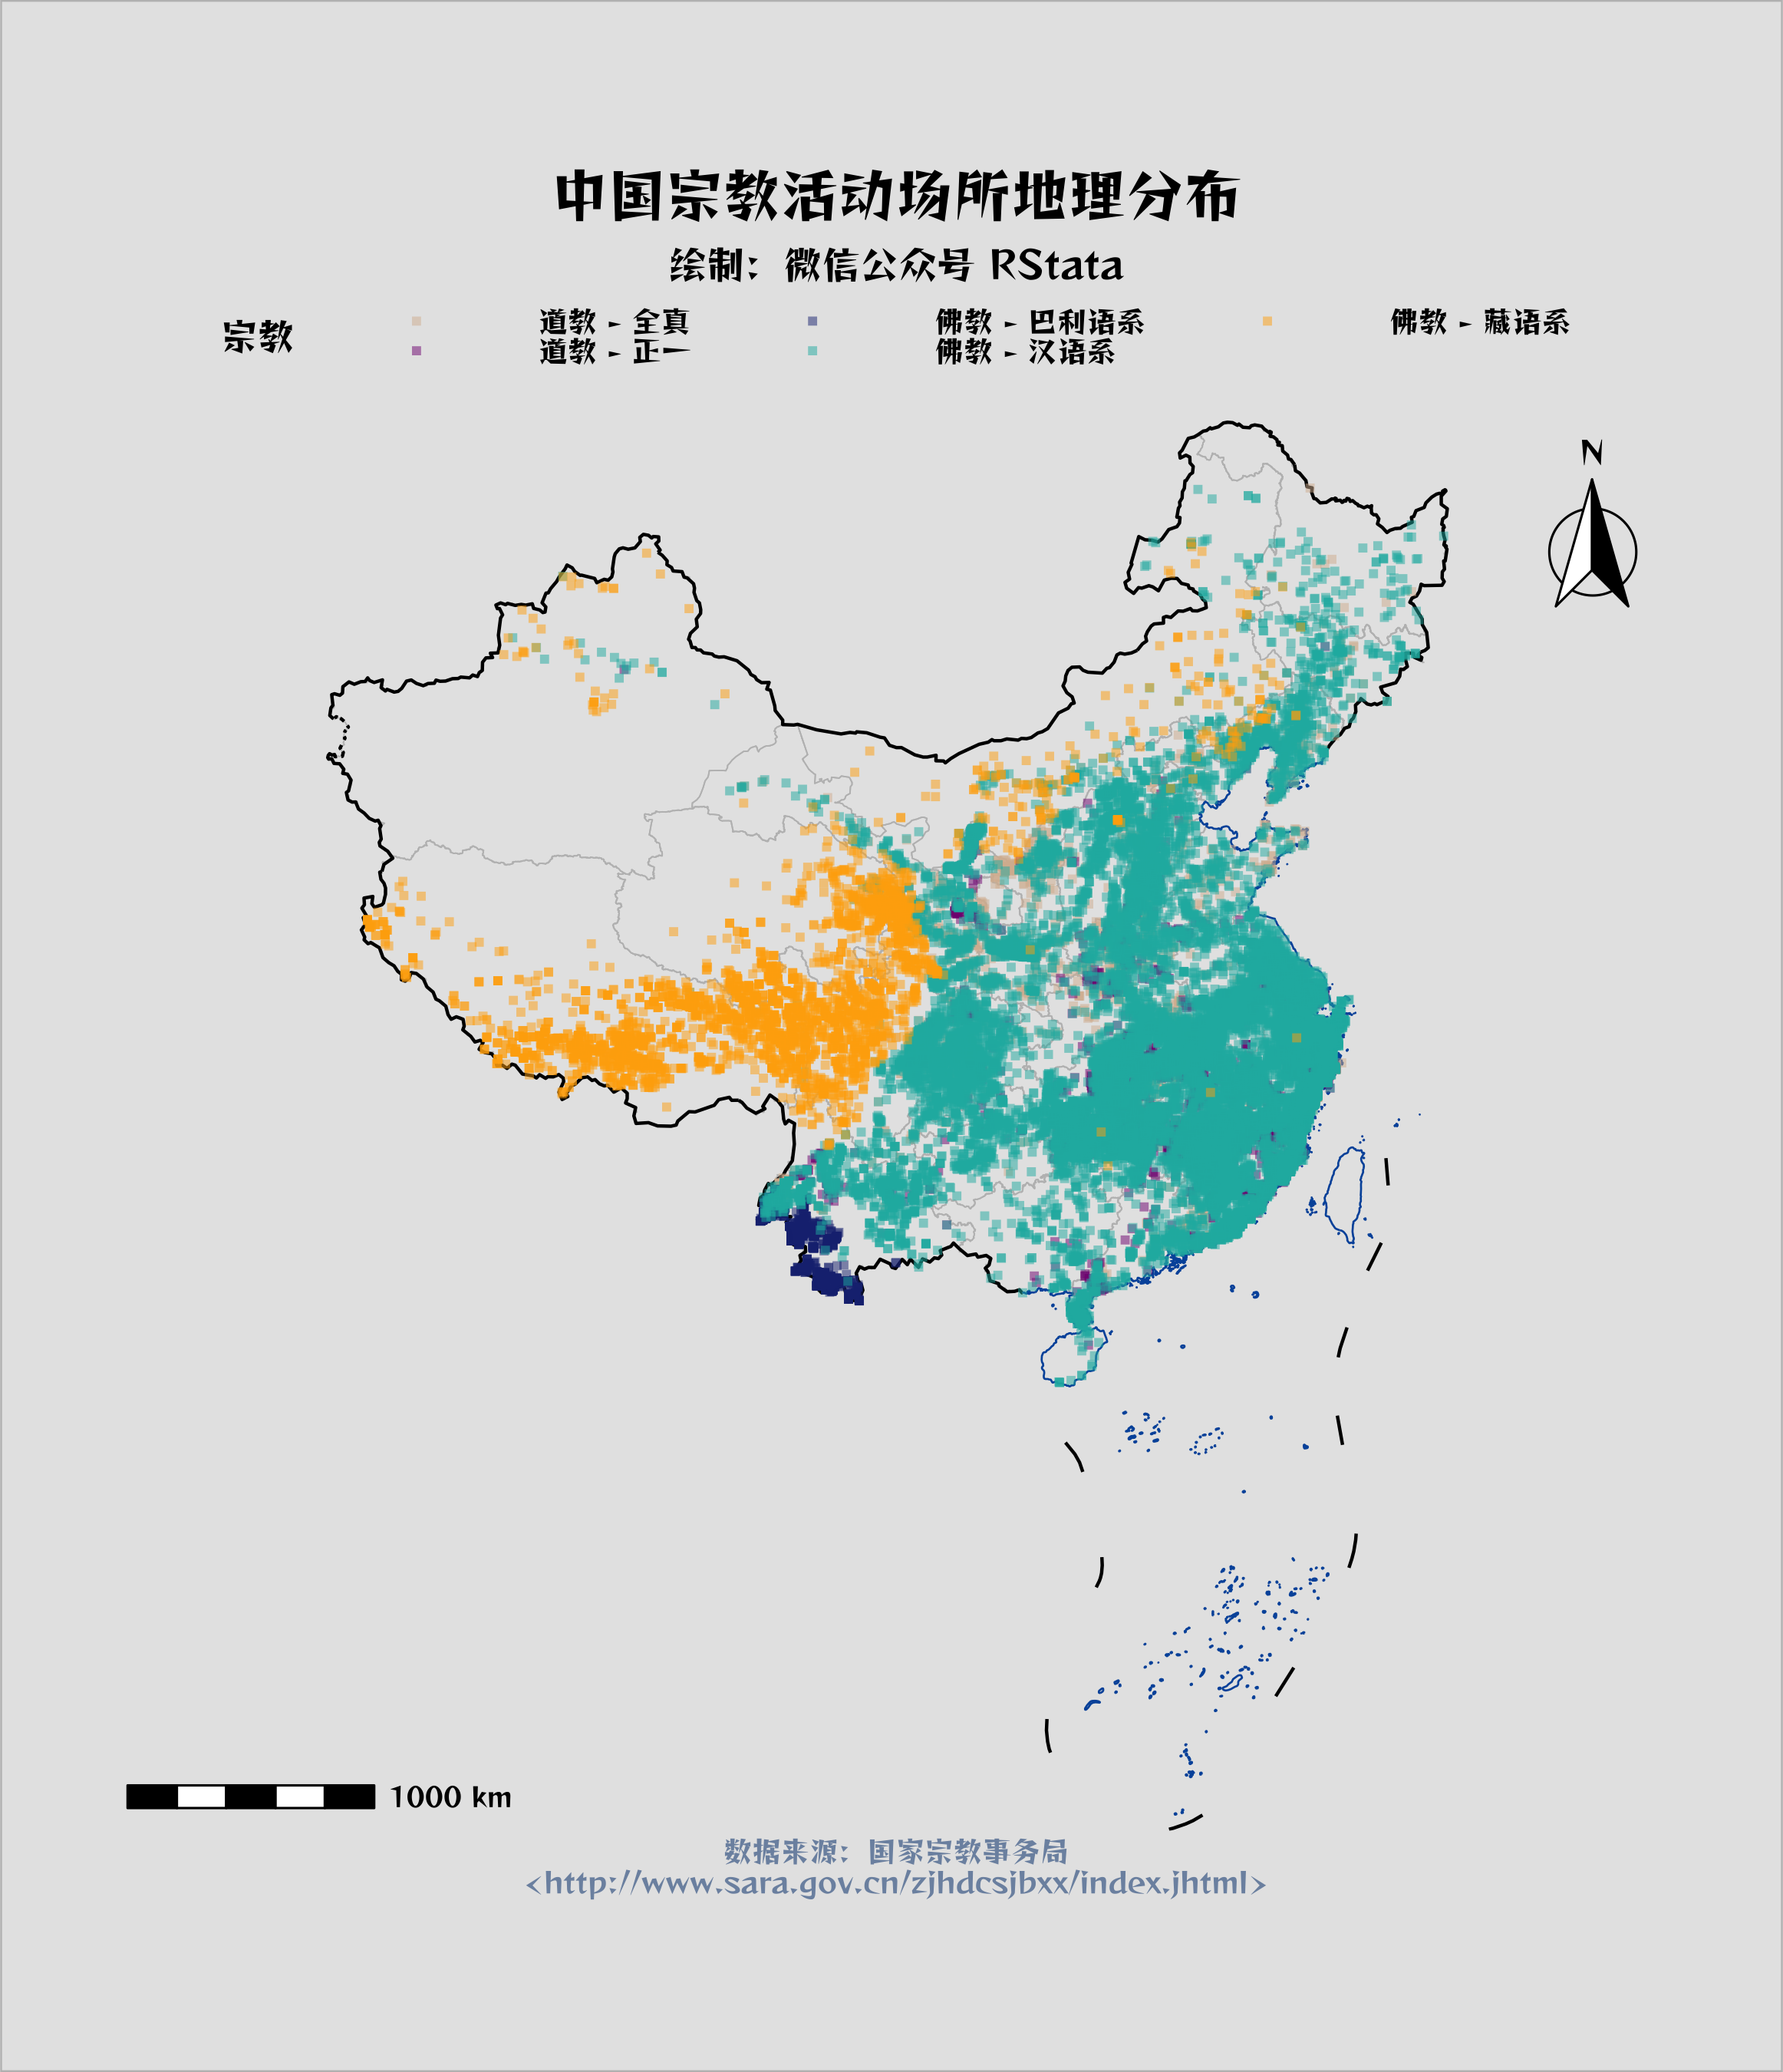 中国宗教场所地理分布